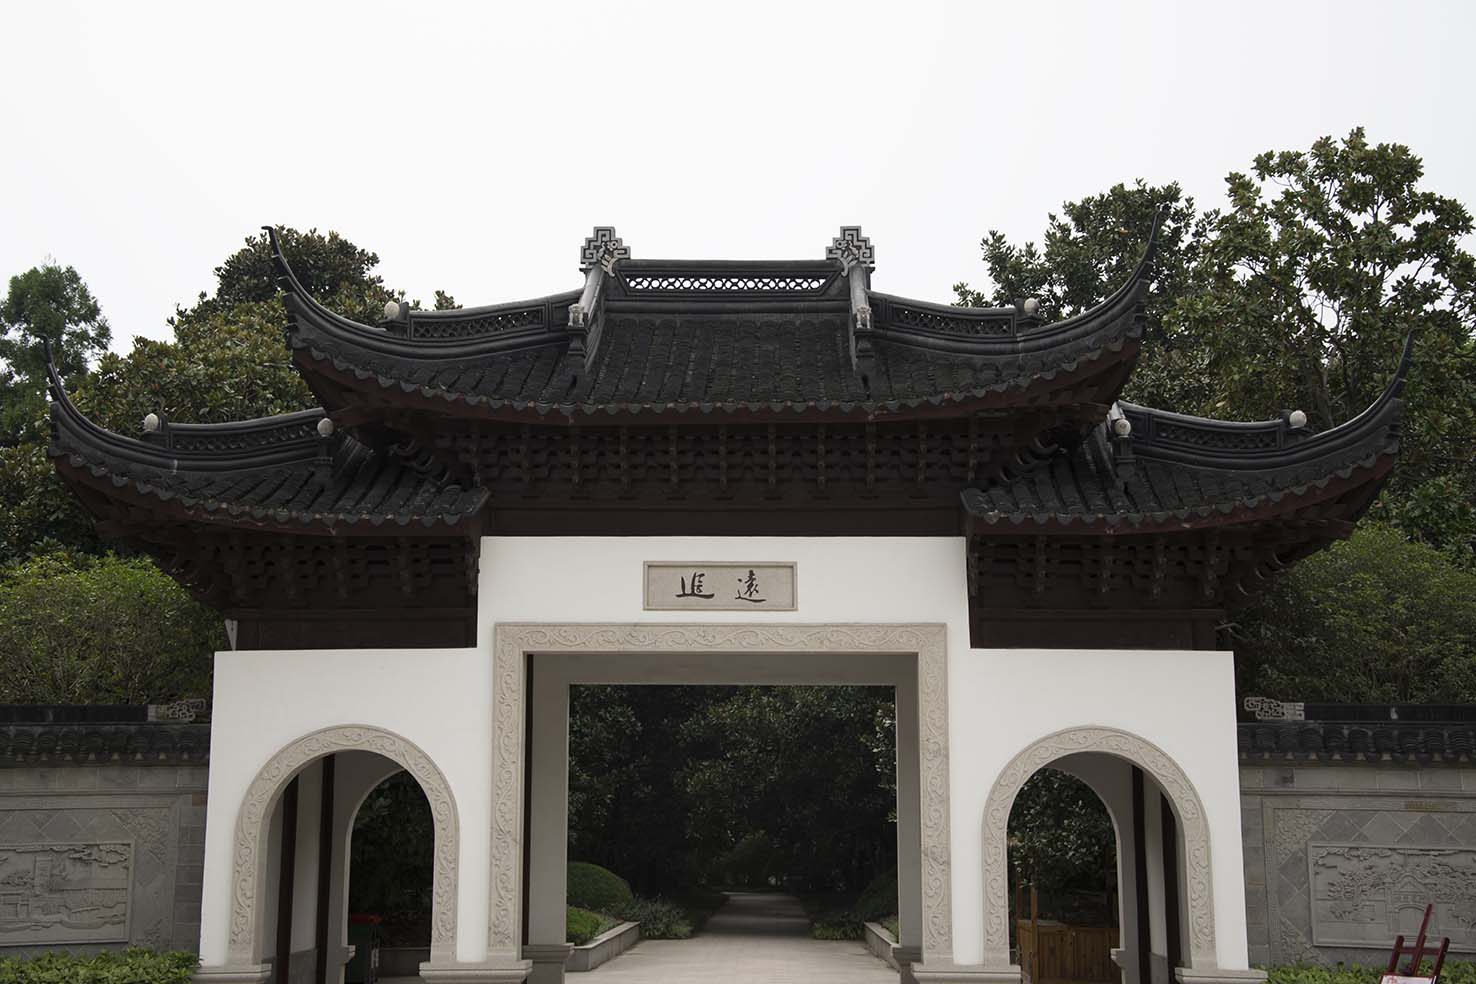 Puerta de la arquitectura del jardín chino antiguo